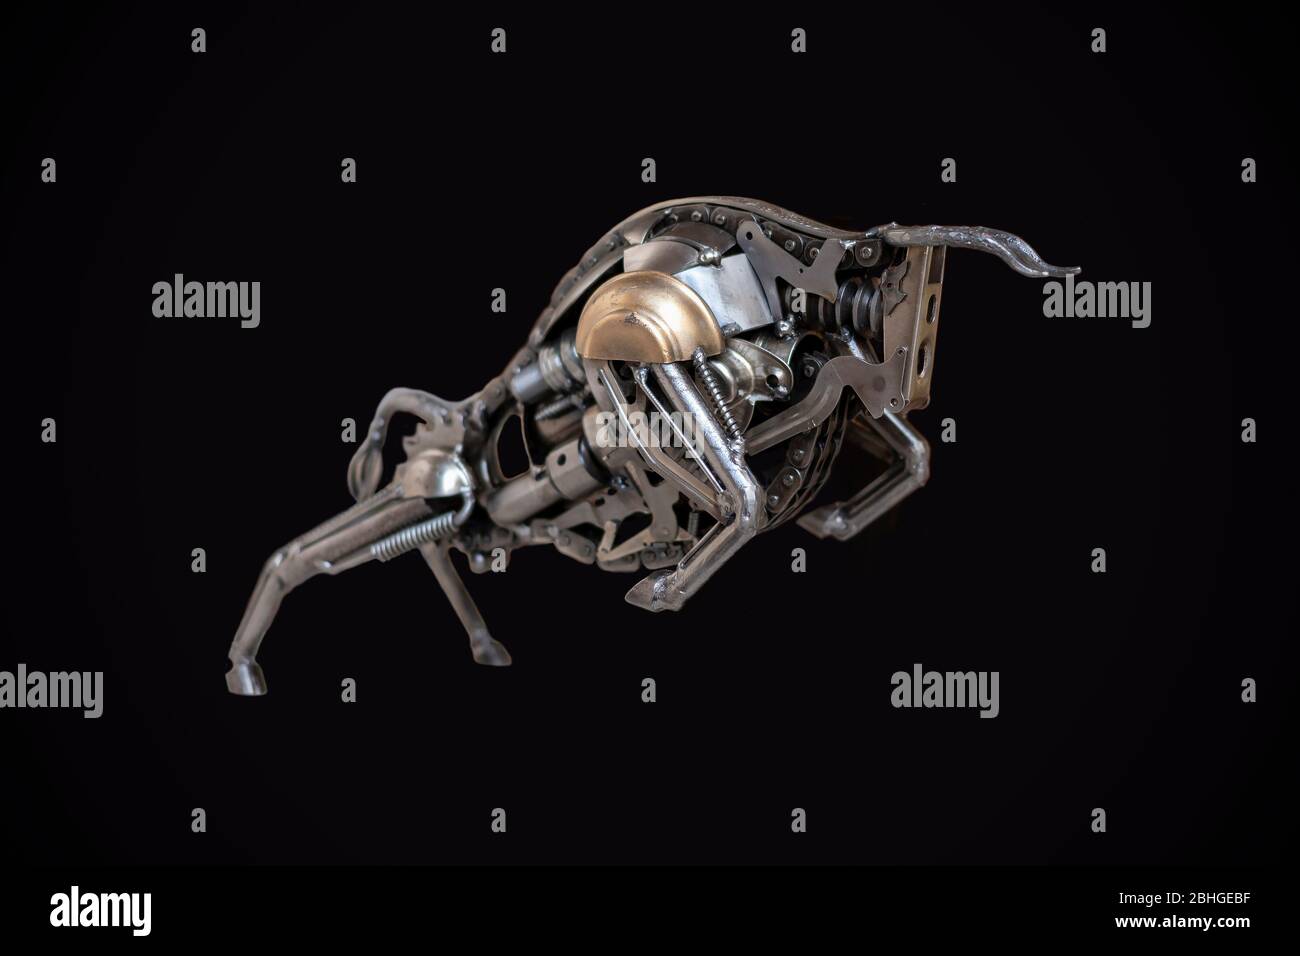 Eine aufladendes Stier Figur aus Schrauben und Federn auf schwarzem  Hintergrund isoliert Stockfotografie - Alamy